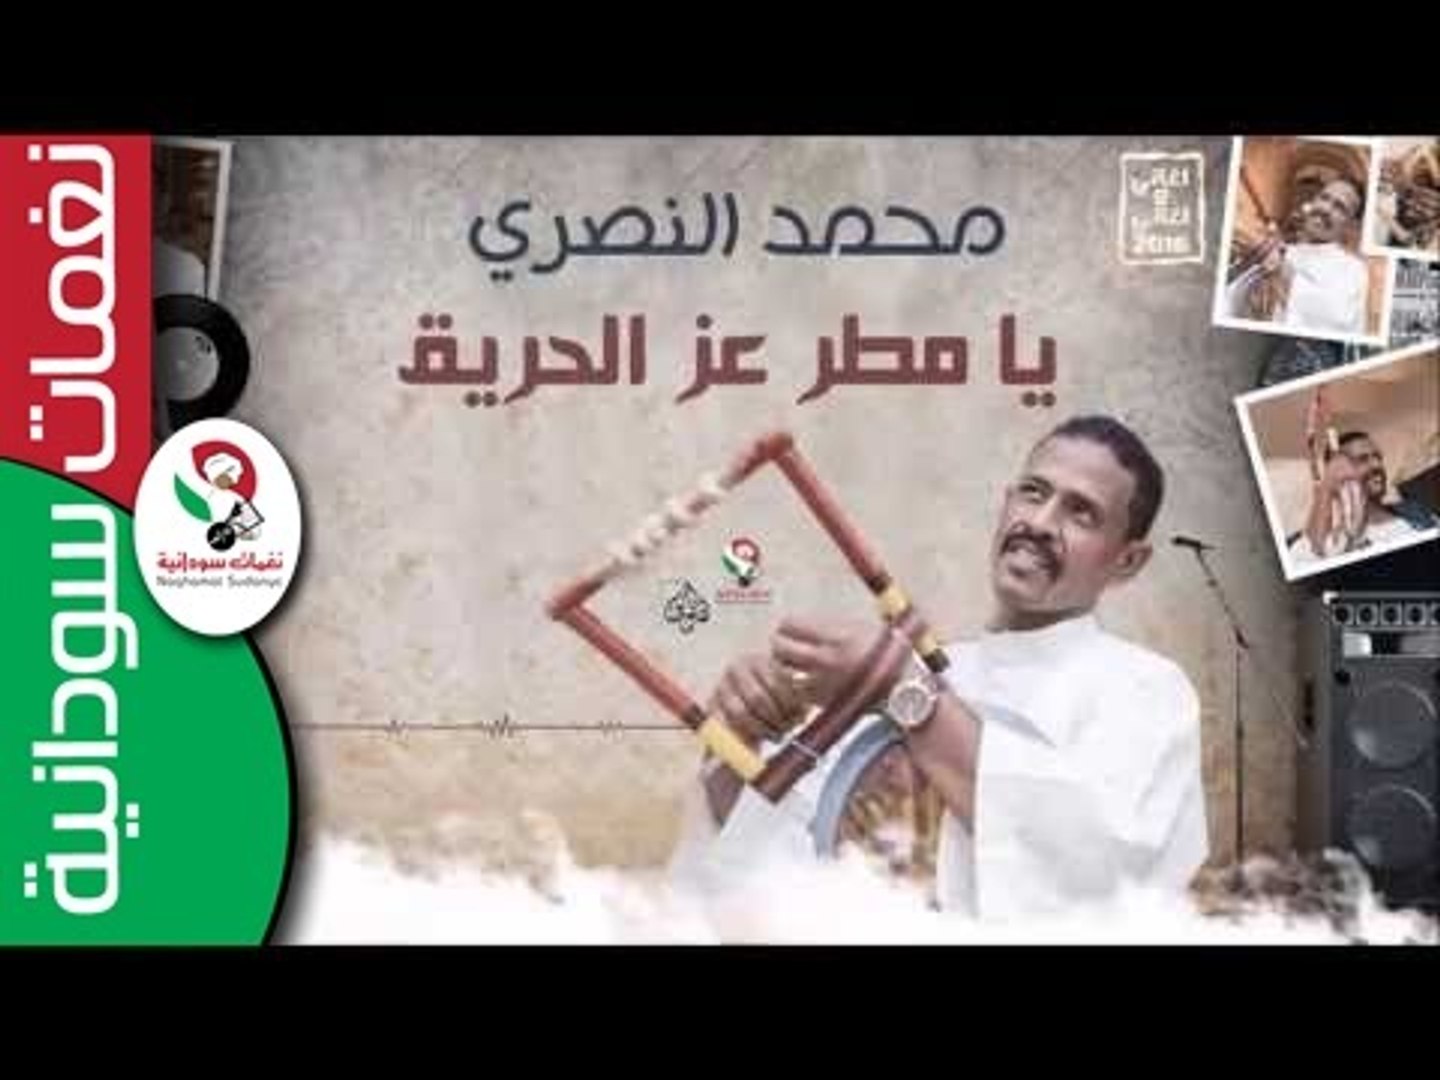 محمد النصري - يا مطر عز الحريق | اغاني سودانية 2016 - video Dailymotion